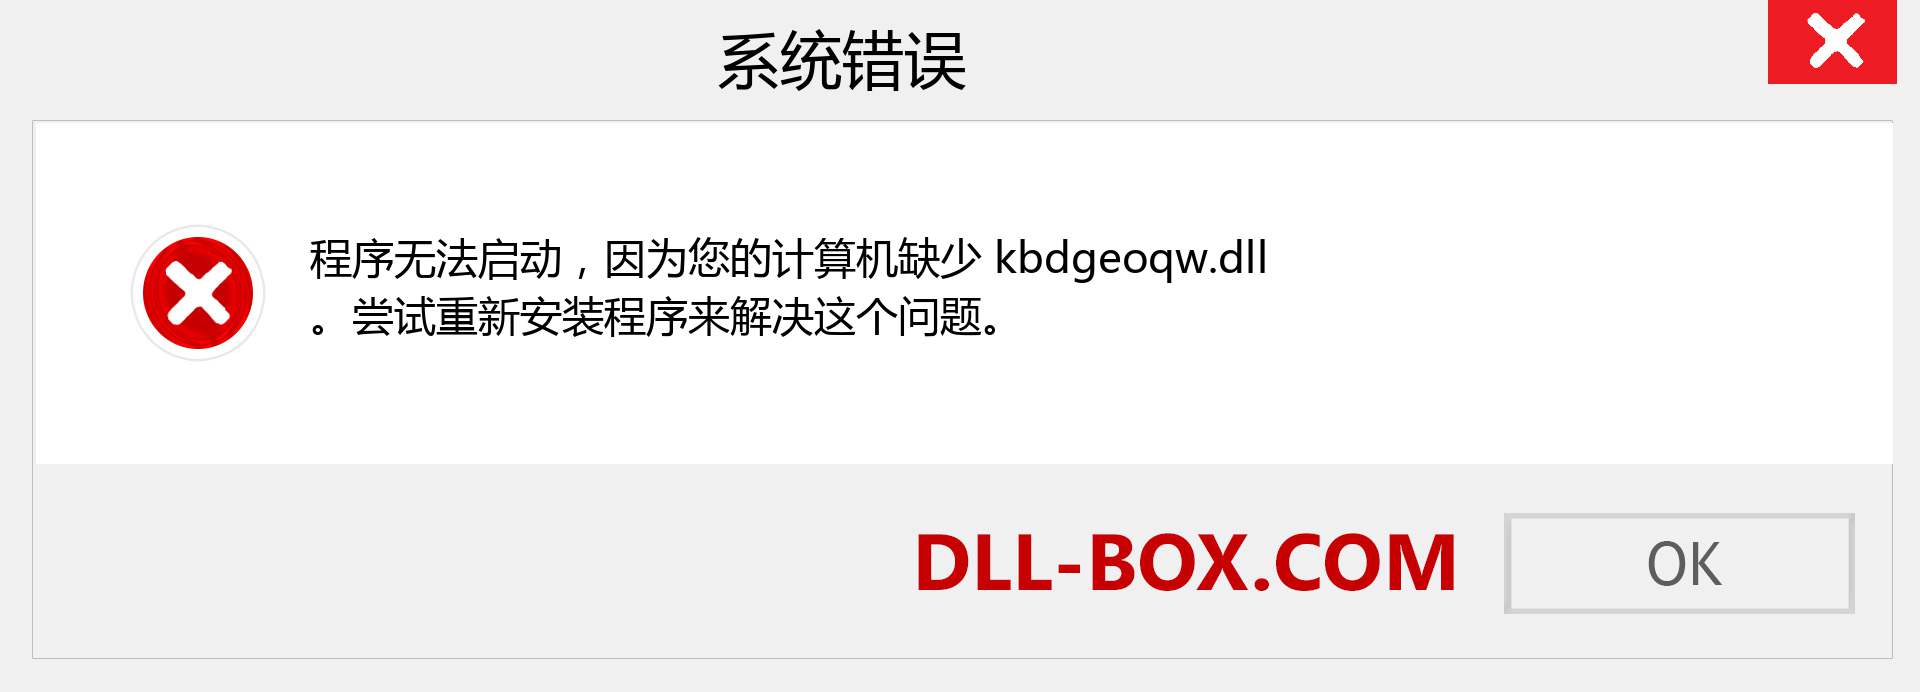 kbdgeoqw.dll 文件丢失？。 适用于 Windows 7、8、10 的下载 - 修复 Windows、照片、图像上的 kbdgeoqw dll 丢失错误